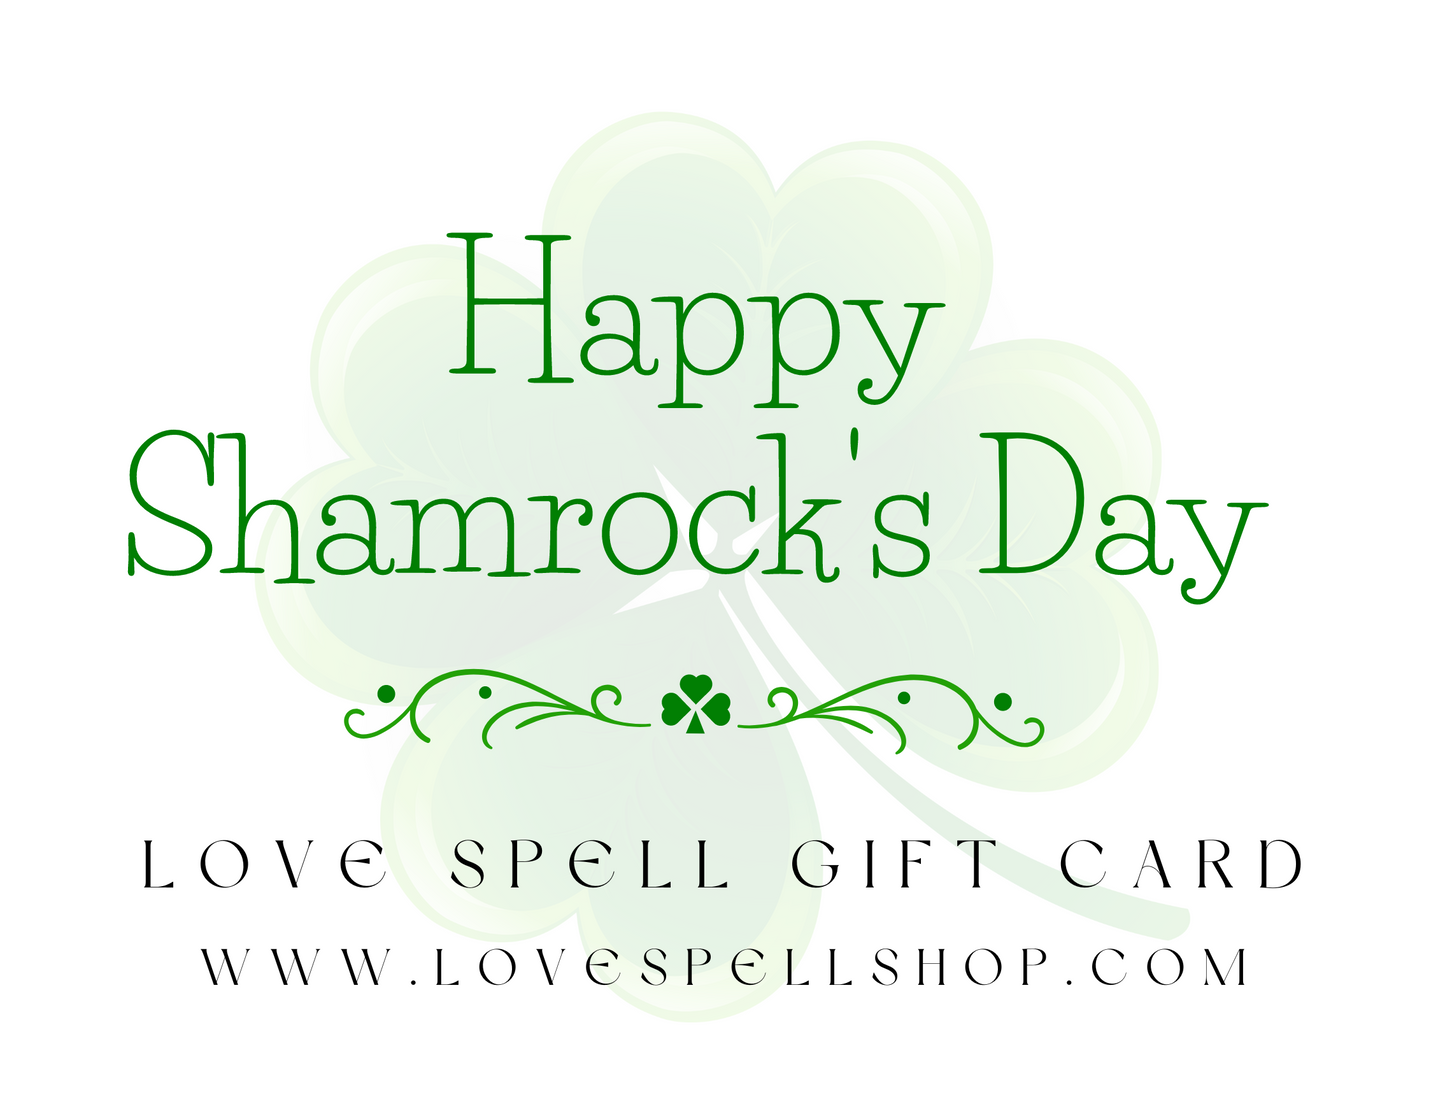 Love Spell Digital Gift Card (Shamrock's Day)